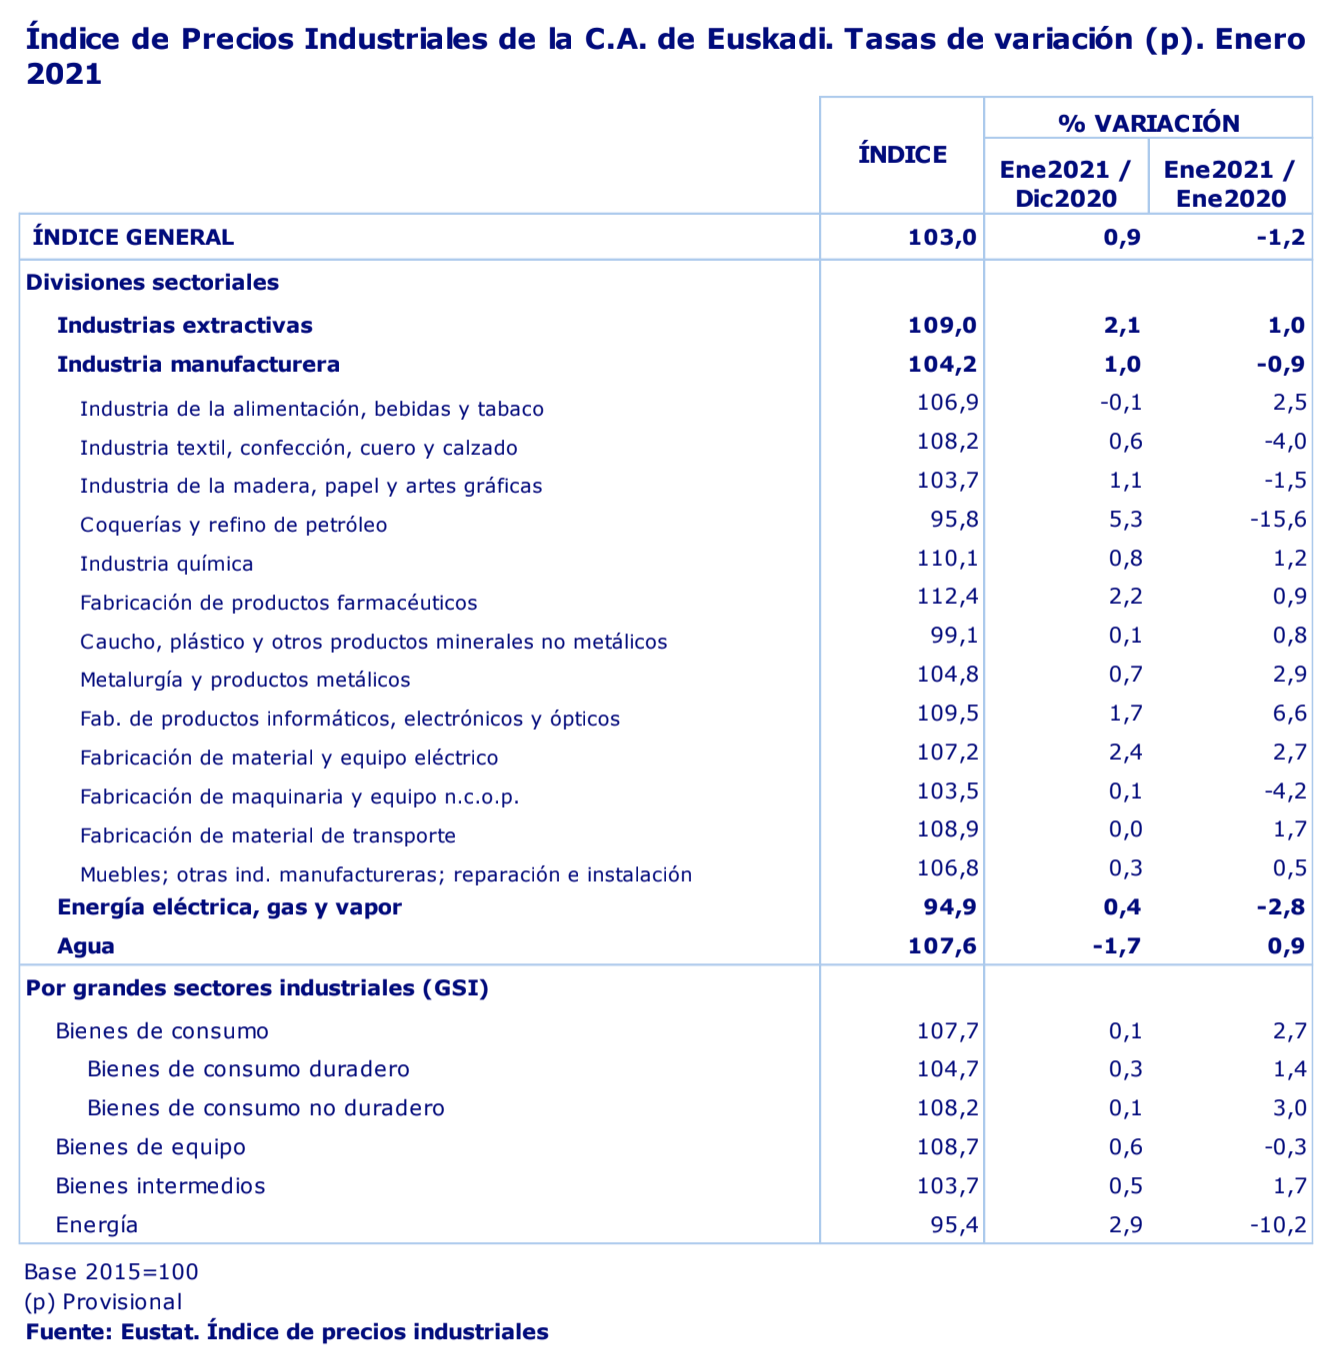 Los precios industriales de Euskadi suben un 0,9% en enero de 2021 en relación al mes anterior 2